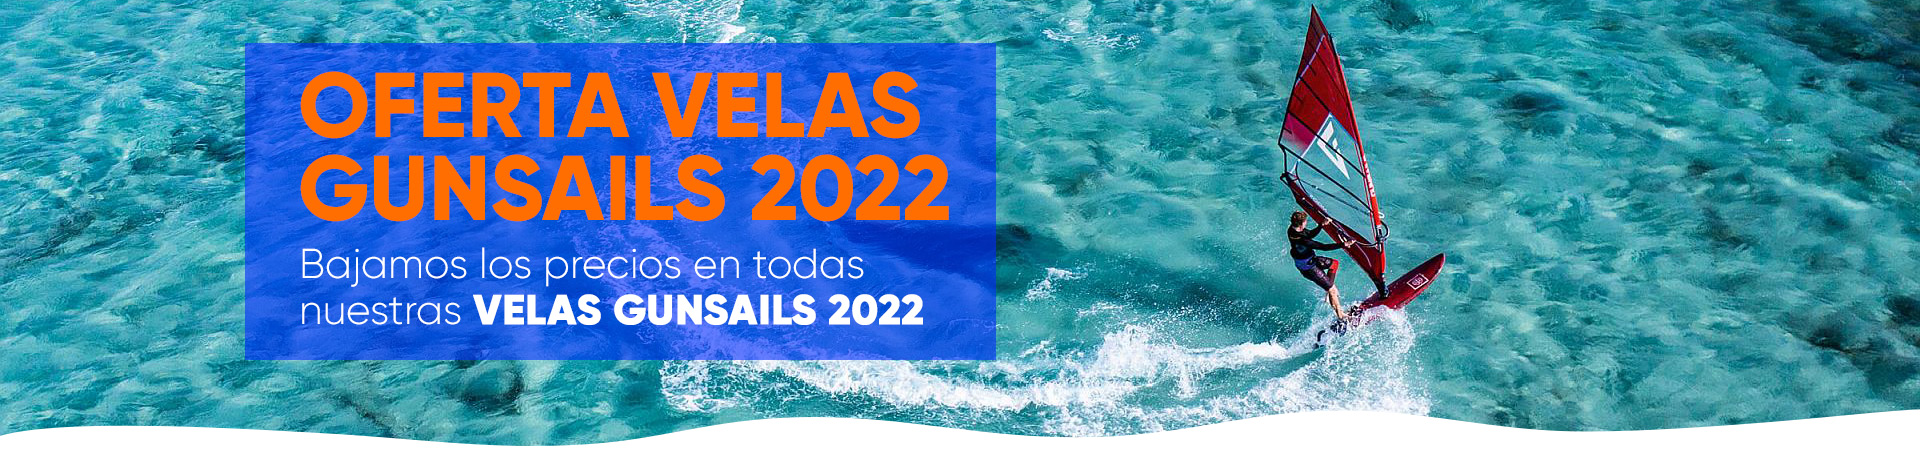 Oferta Velas GunSails 2022